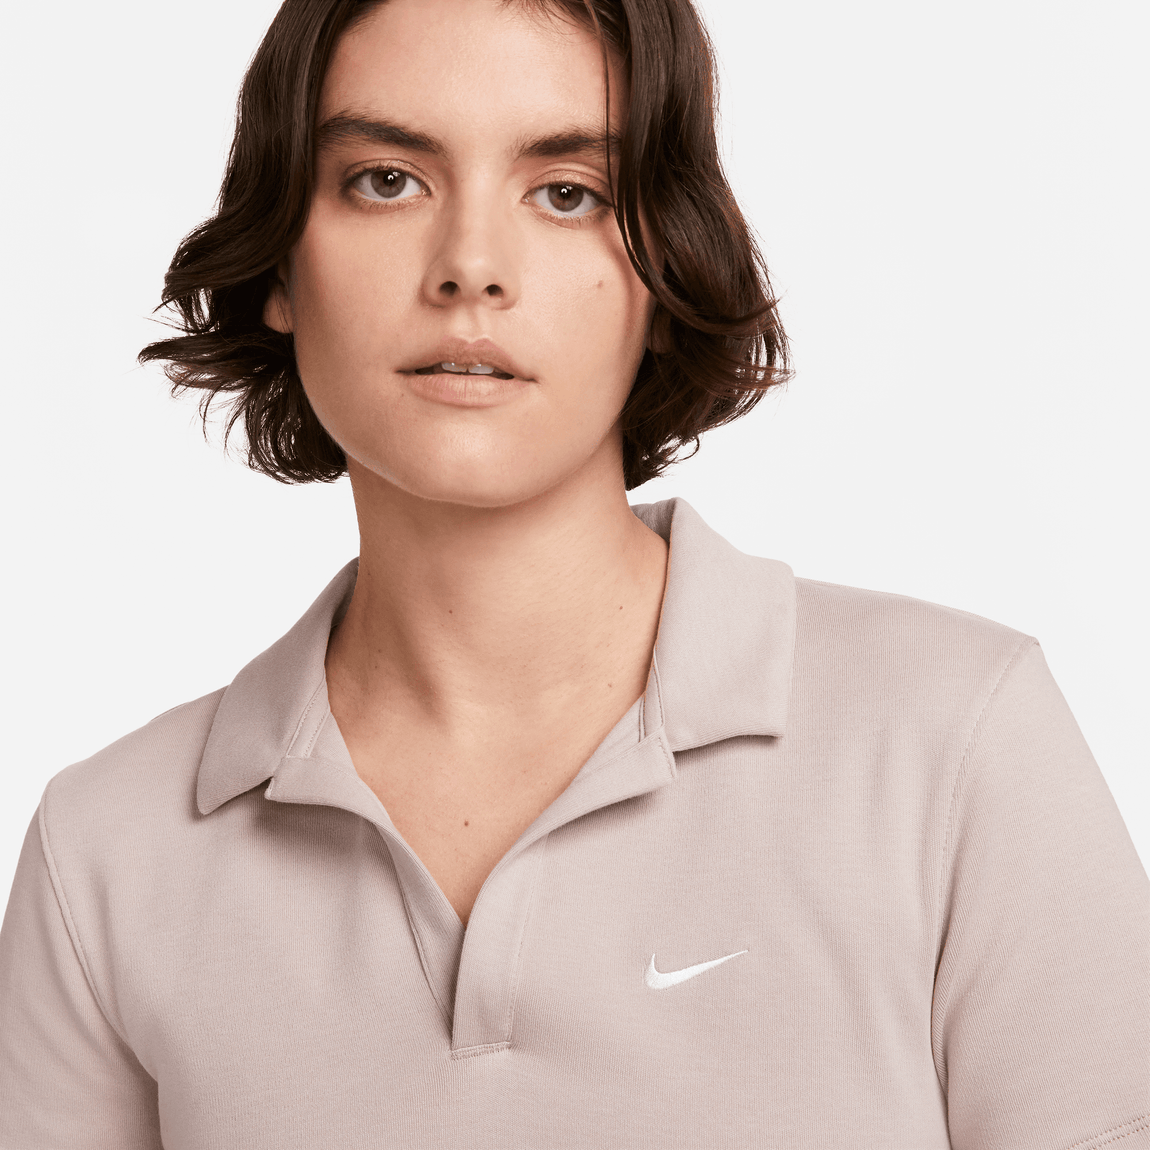 Women's Nike Sportswear Essential Polo (Diffused Taupe/White) - Women's Nike Sportswear Essential Polo (Diffused Taupe/White) - 